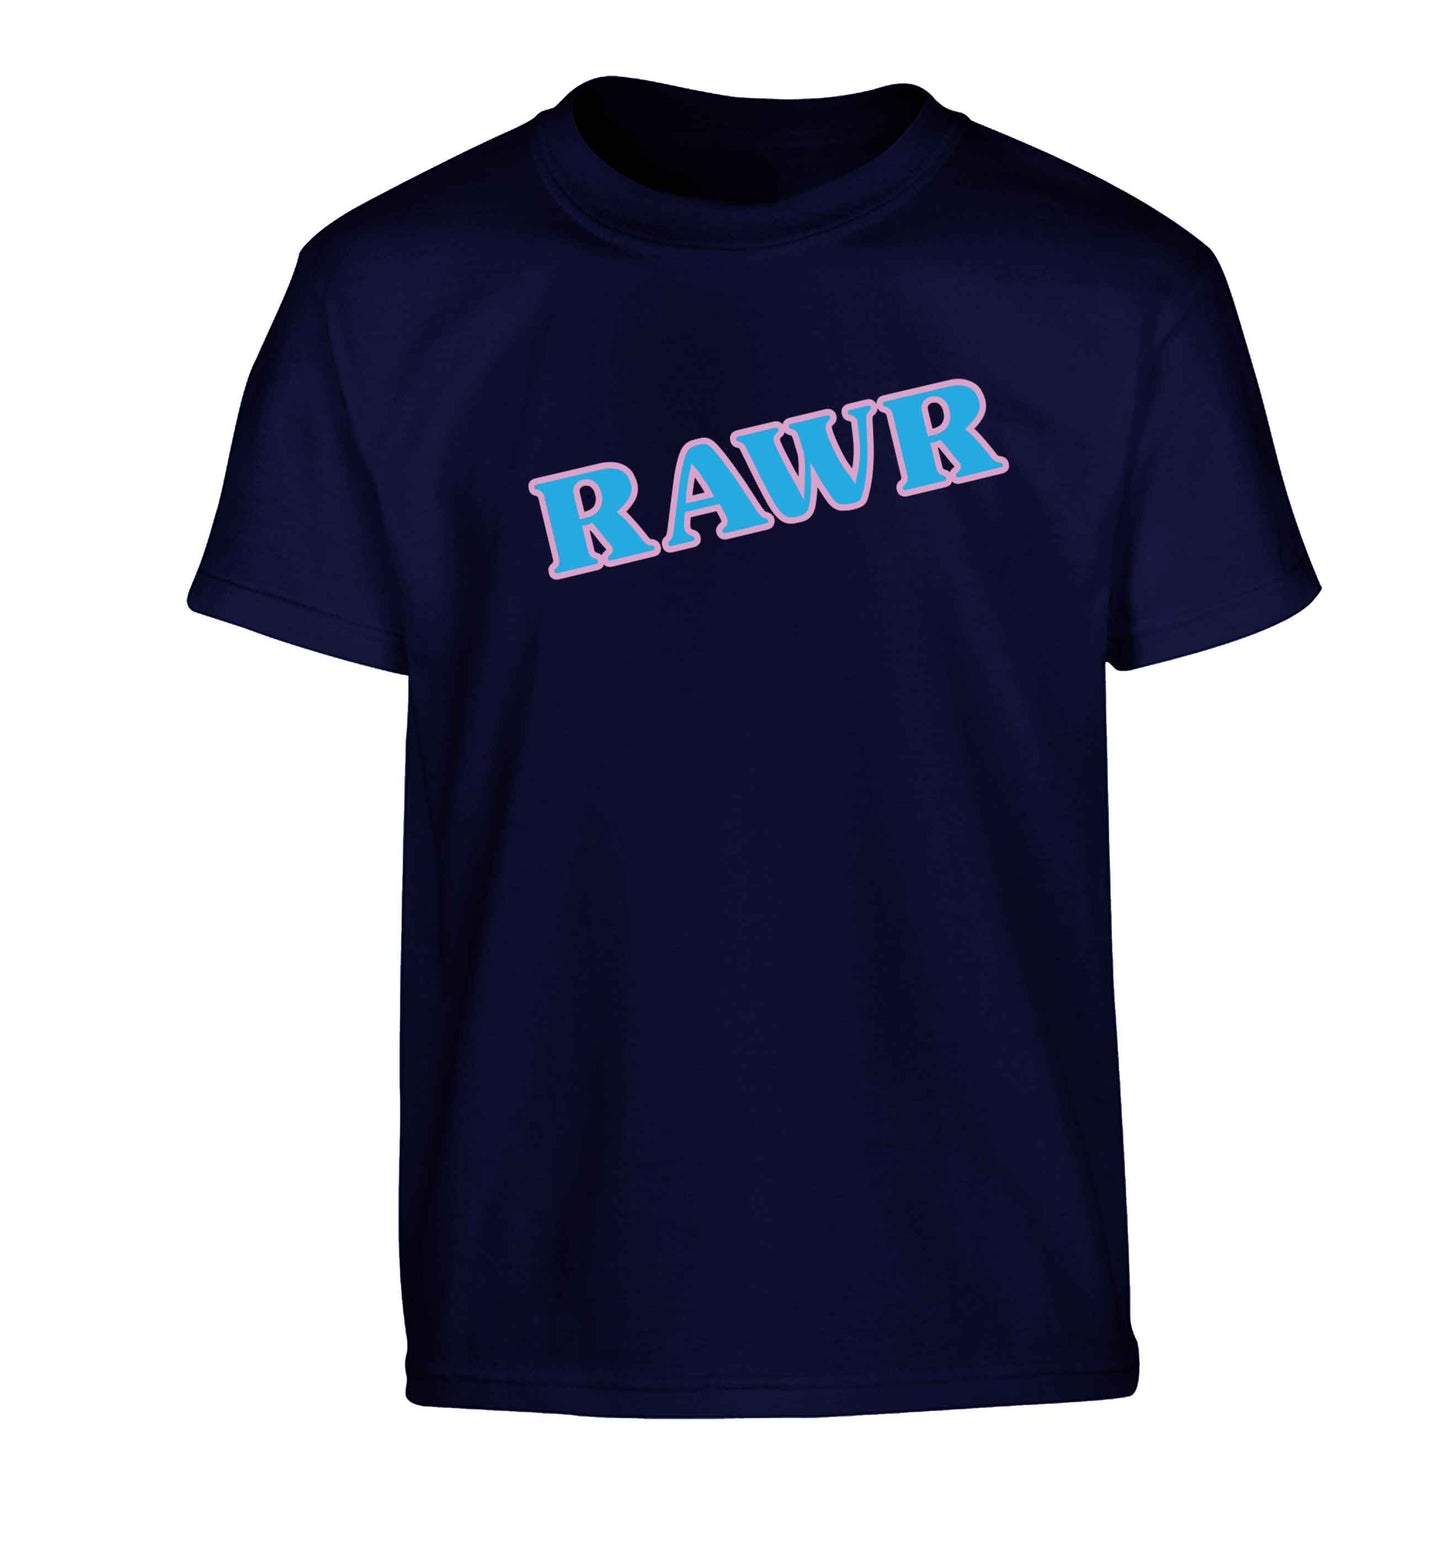 Rawr Children's navy Tshirt 12-13 Years